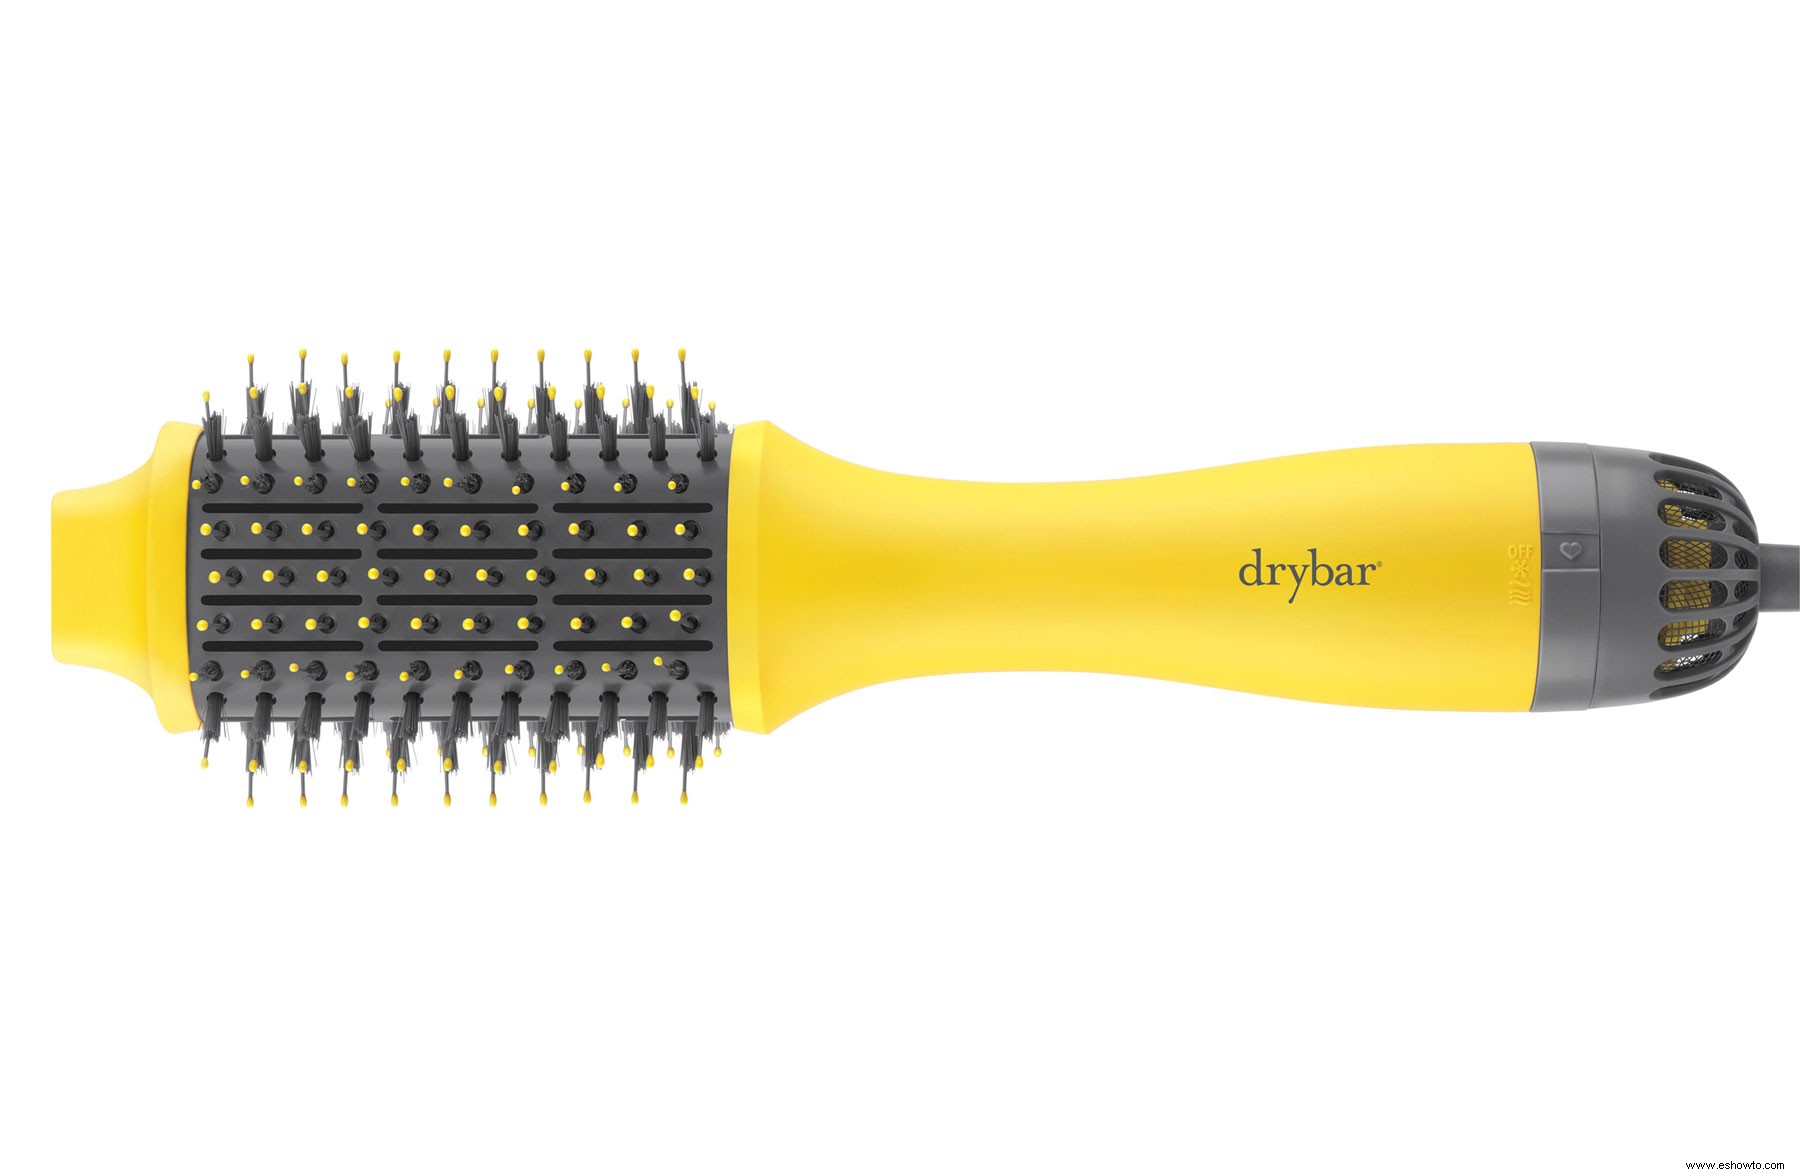 Controlar mi cabello encrespado es bastante fácil gracias a este cepillo para secador 